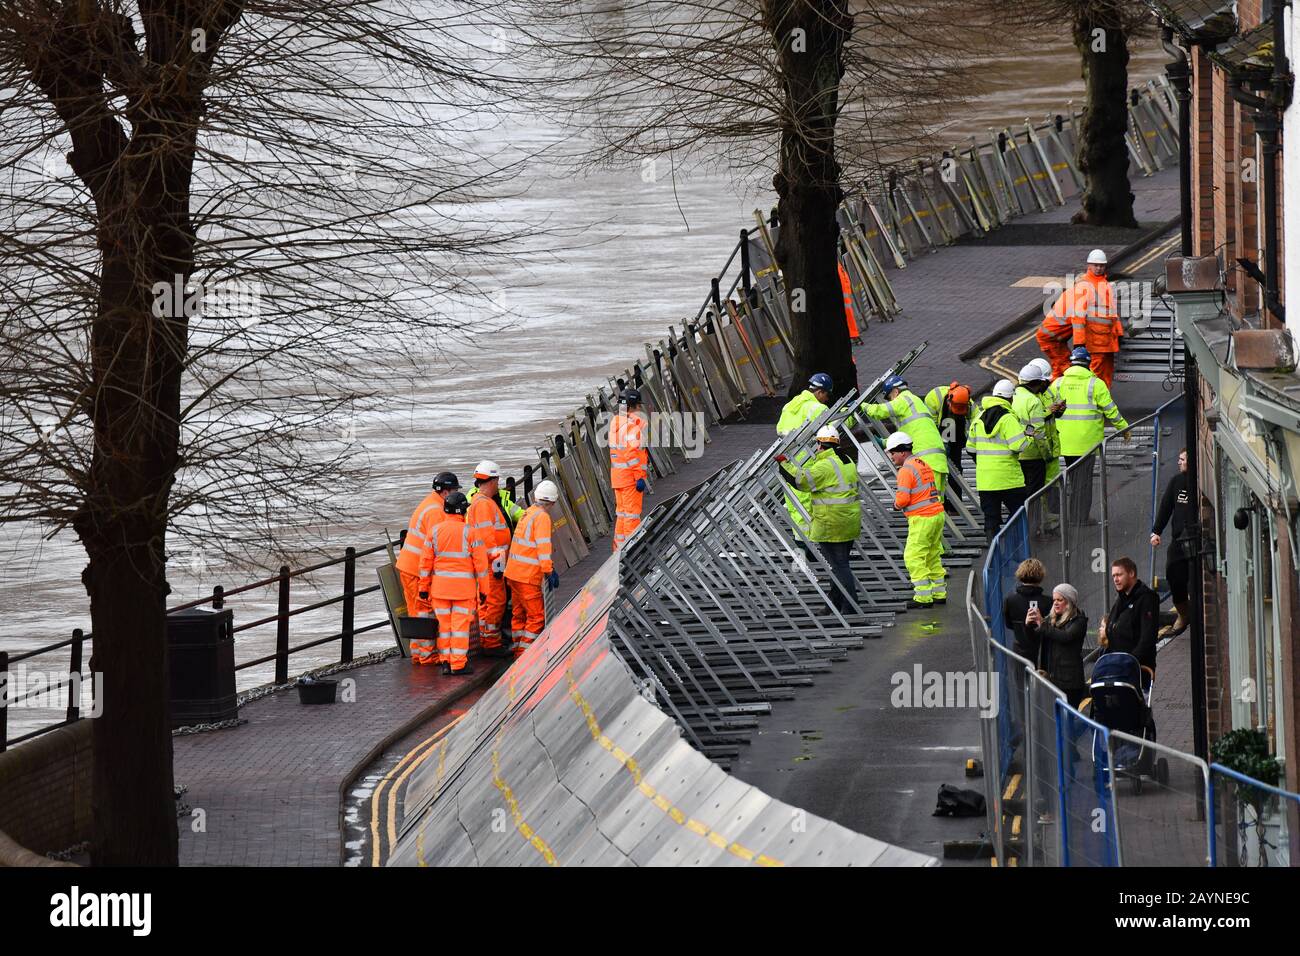 Ironbridge, Shropshire, Royaume-Uni. 16 février 2020 le personnel de l'agence Environnement érige des barrières de défense contre les inondations le long de la rivière Severn à Ironbridge à la suite de la forte pluie provoquée par Storm Dennis. Crédit: David Bagnall/Alay Live News Banque D'Images